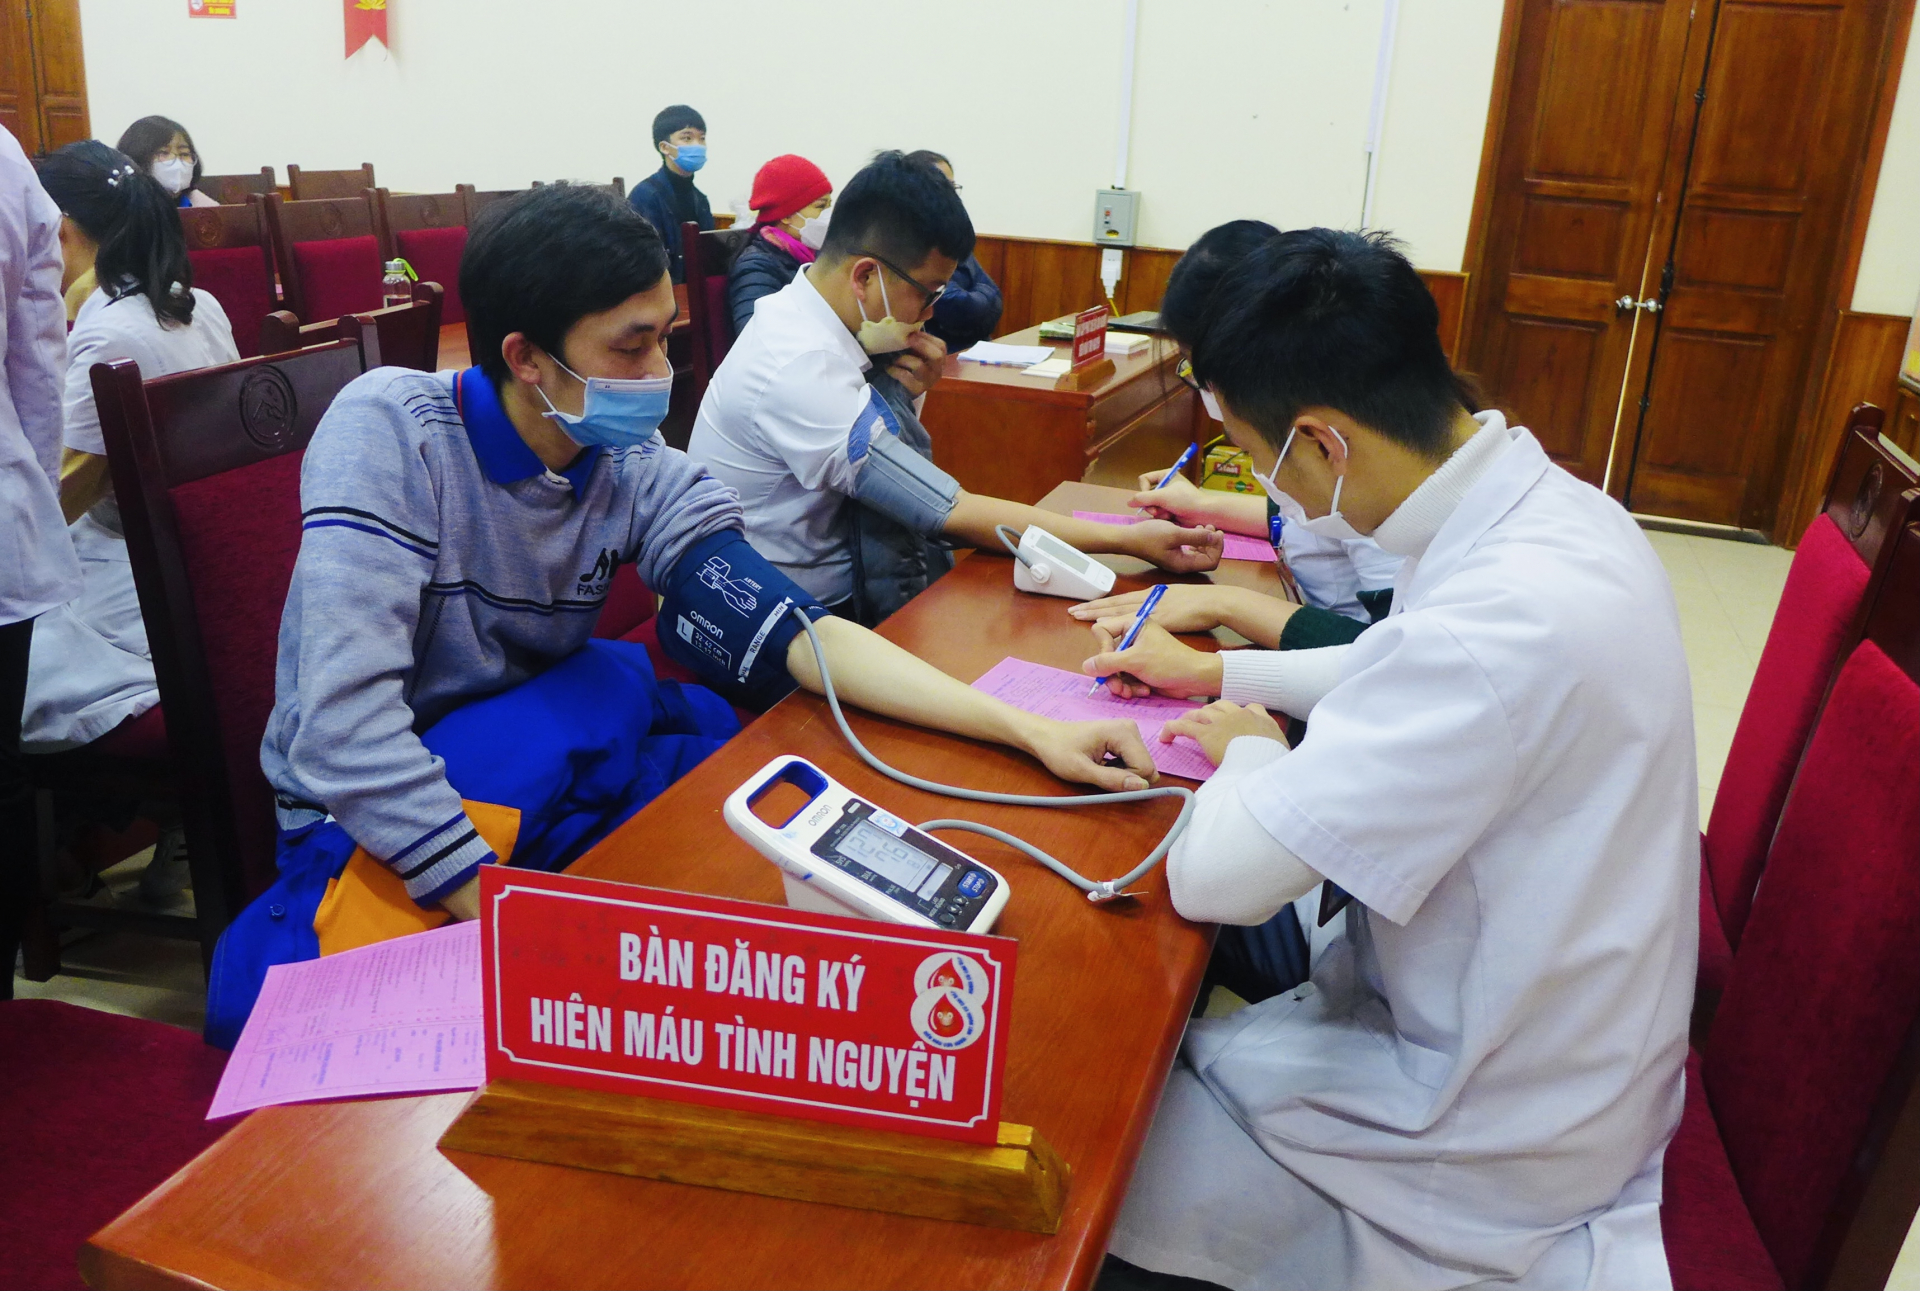 Các tình nguyện đăng ký, kiểm tra sức khỏe trước khi hiến máu tình nguyện